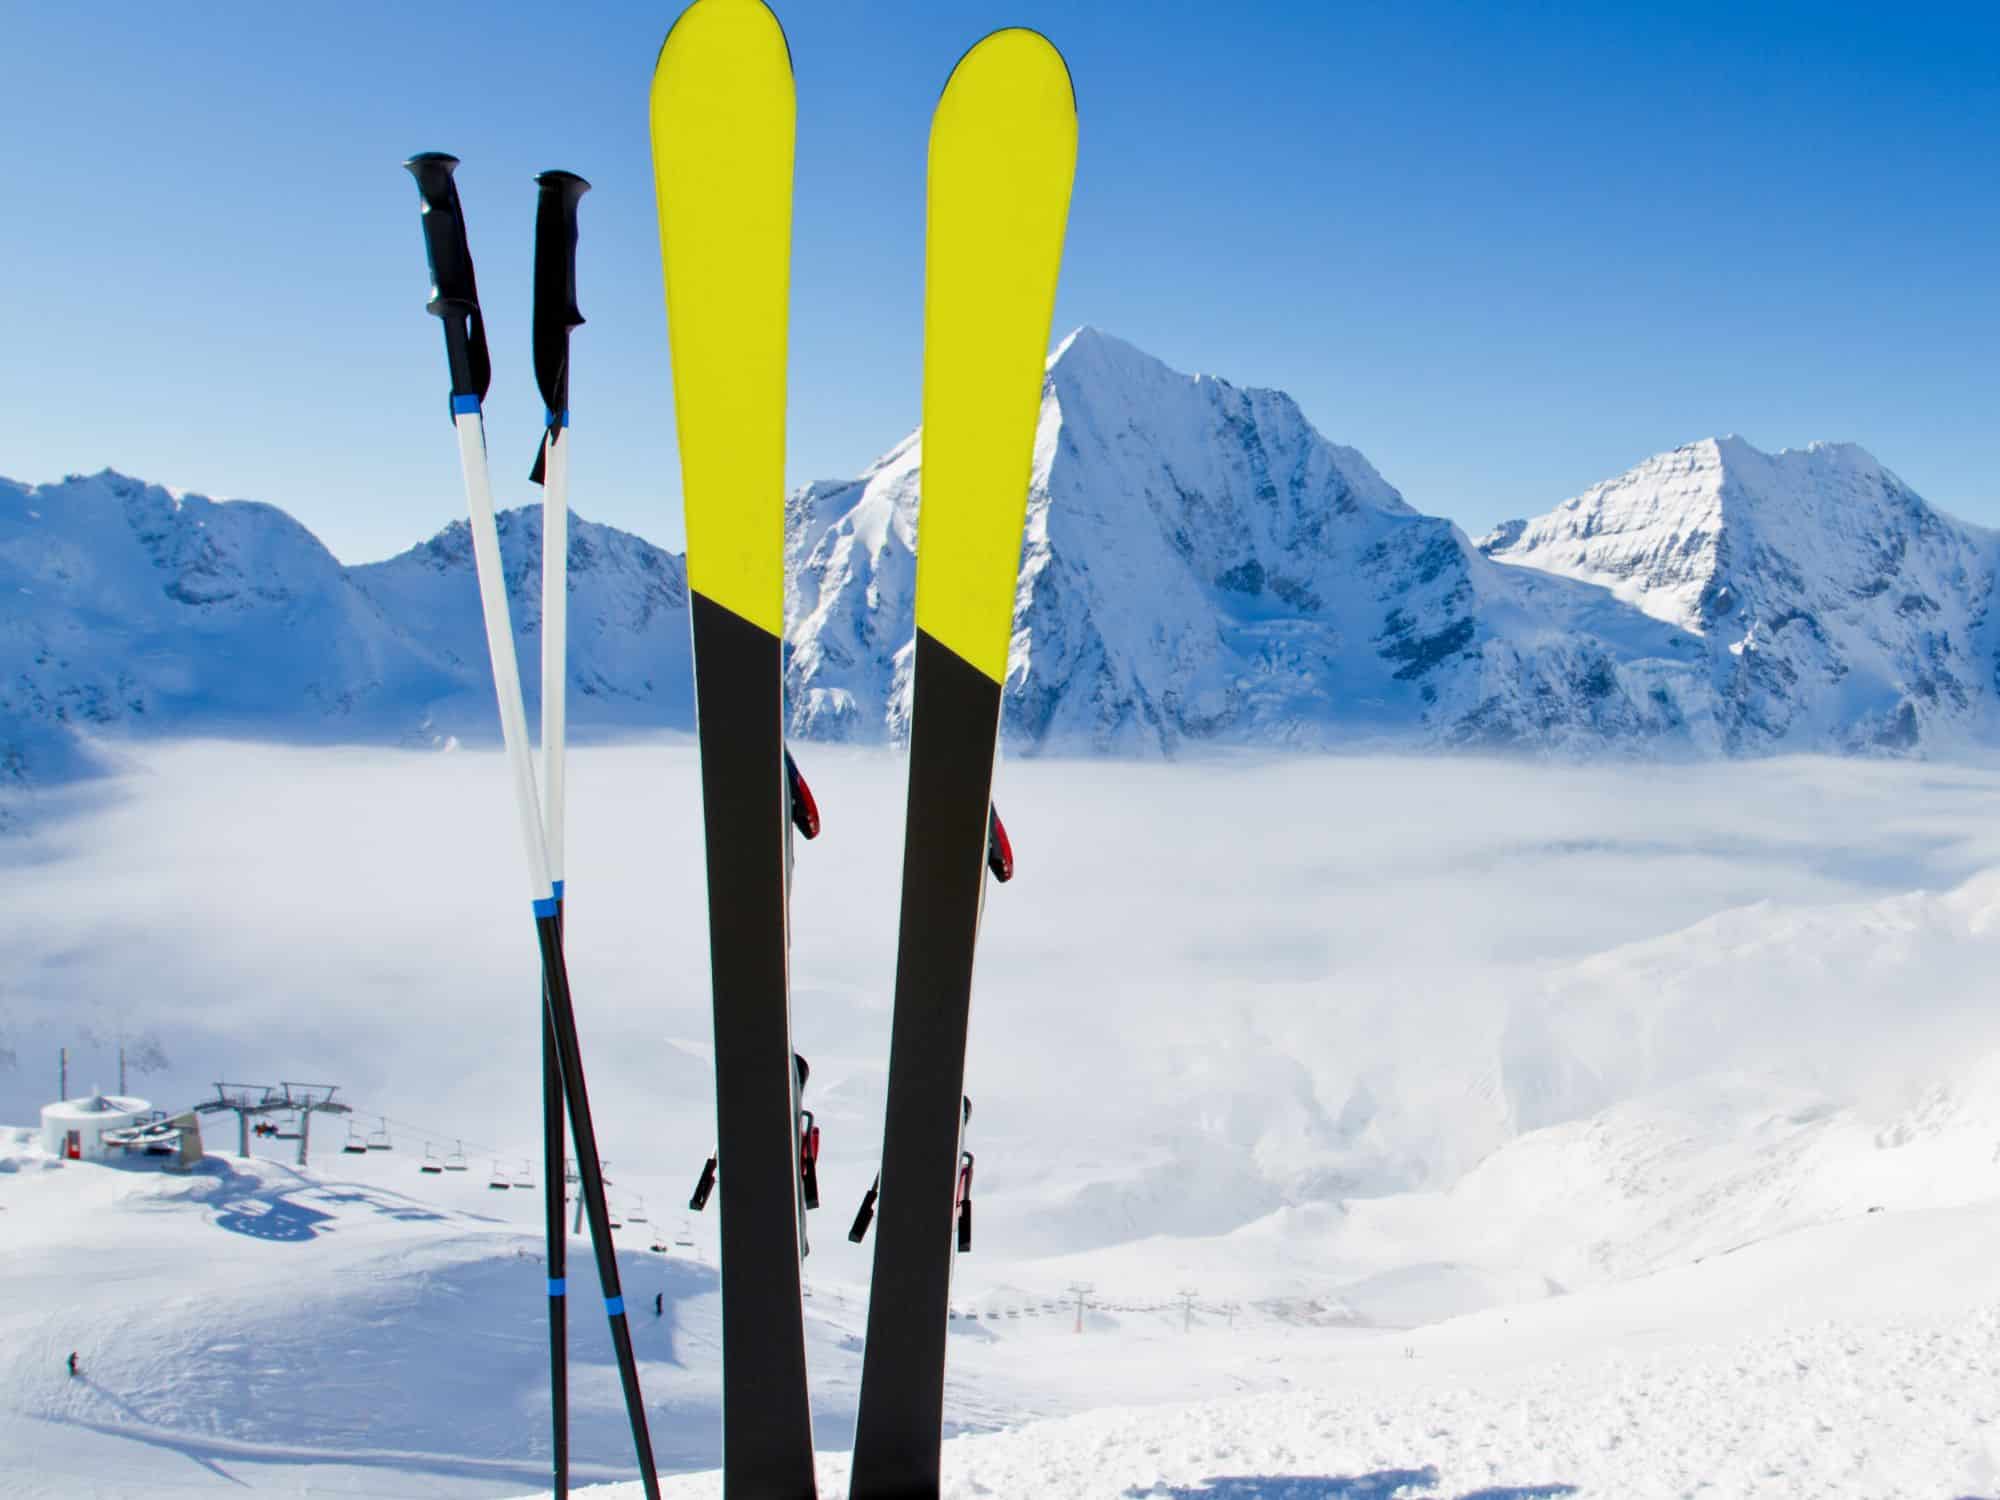 Mountain skis - ski packing list